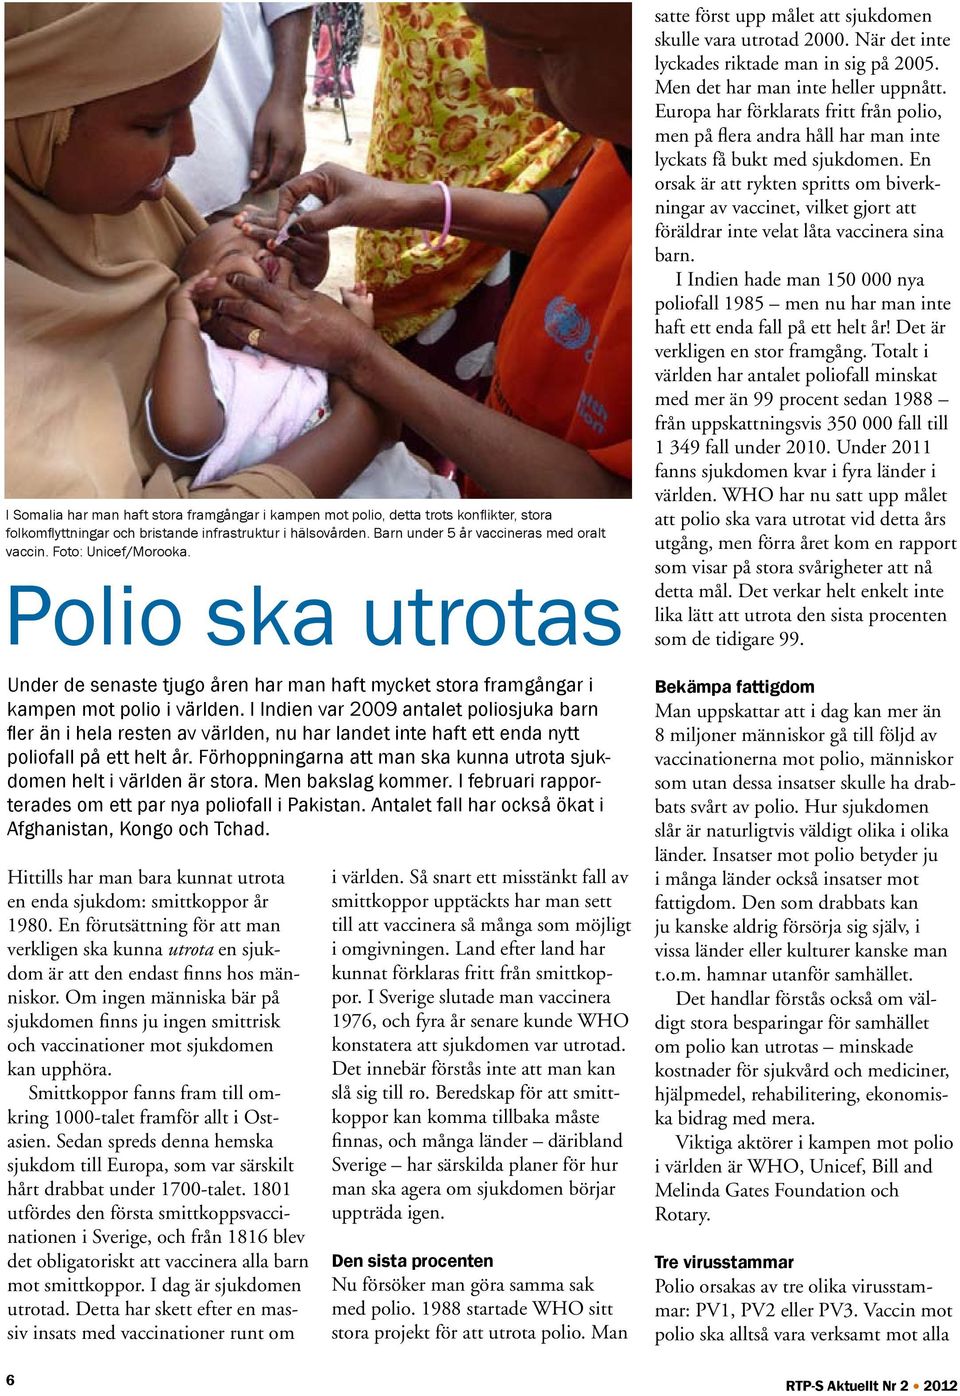 I Indien var 2009 antalet poliosjuka barn fler än i hela resten av världen, nu har landet inte haft ett enda nytt poliofall på ett helt år.